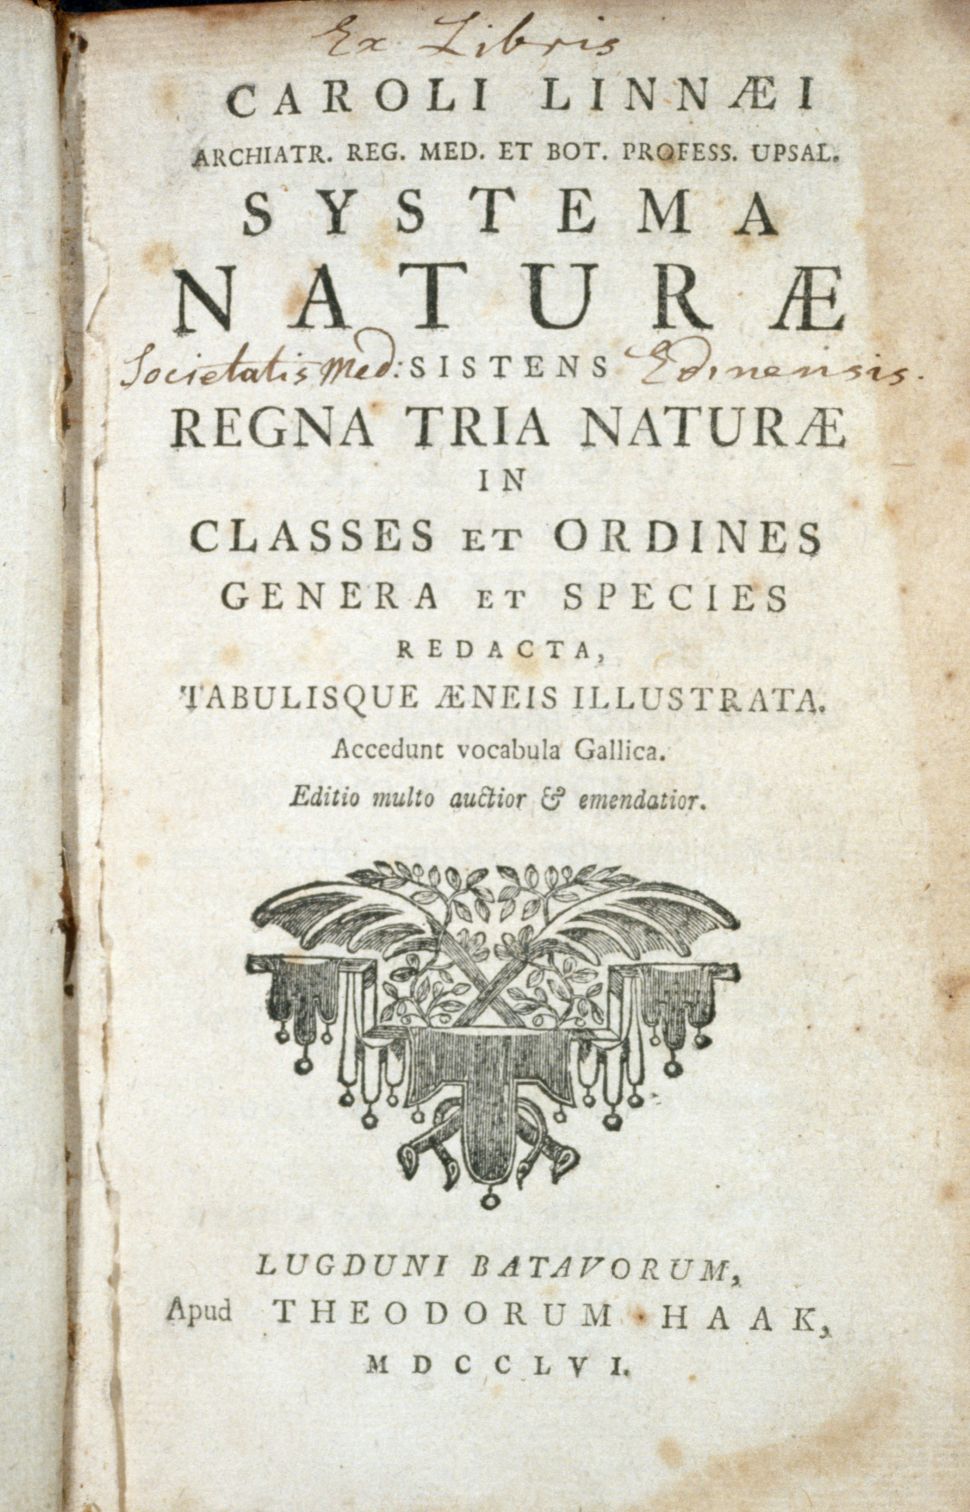 Trang bìa của tác phẩm Systema Naturae xuất bản năm 1756. Ảnh:  CORBIS.